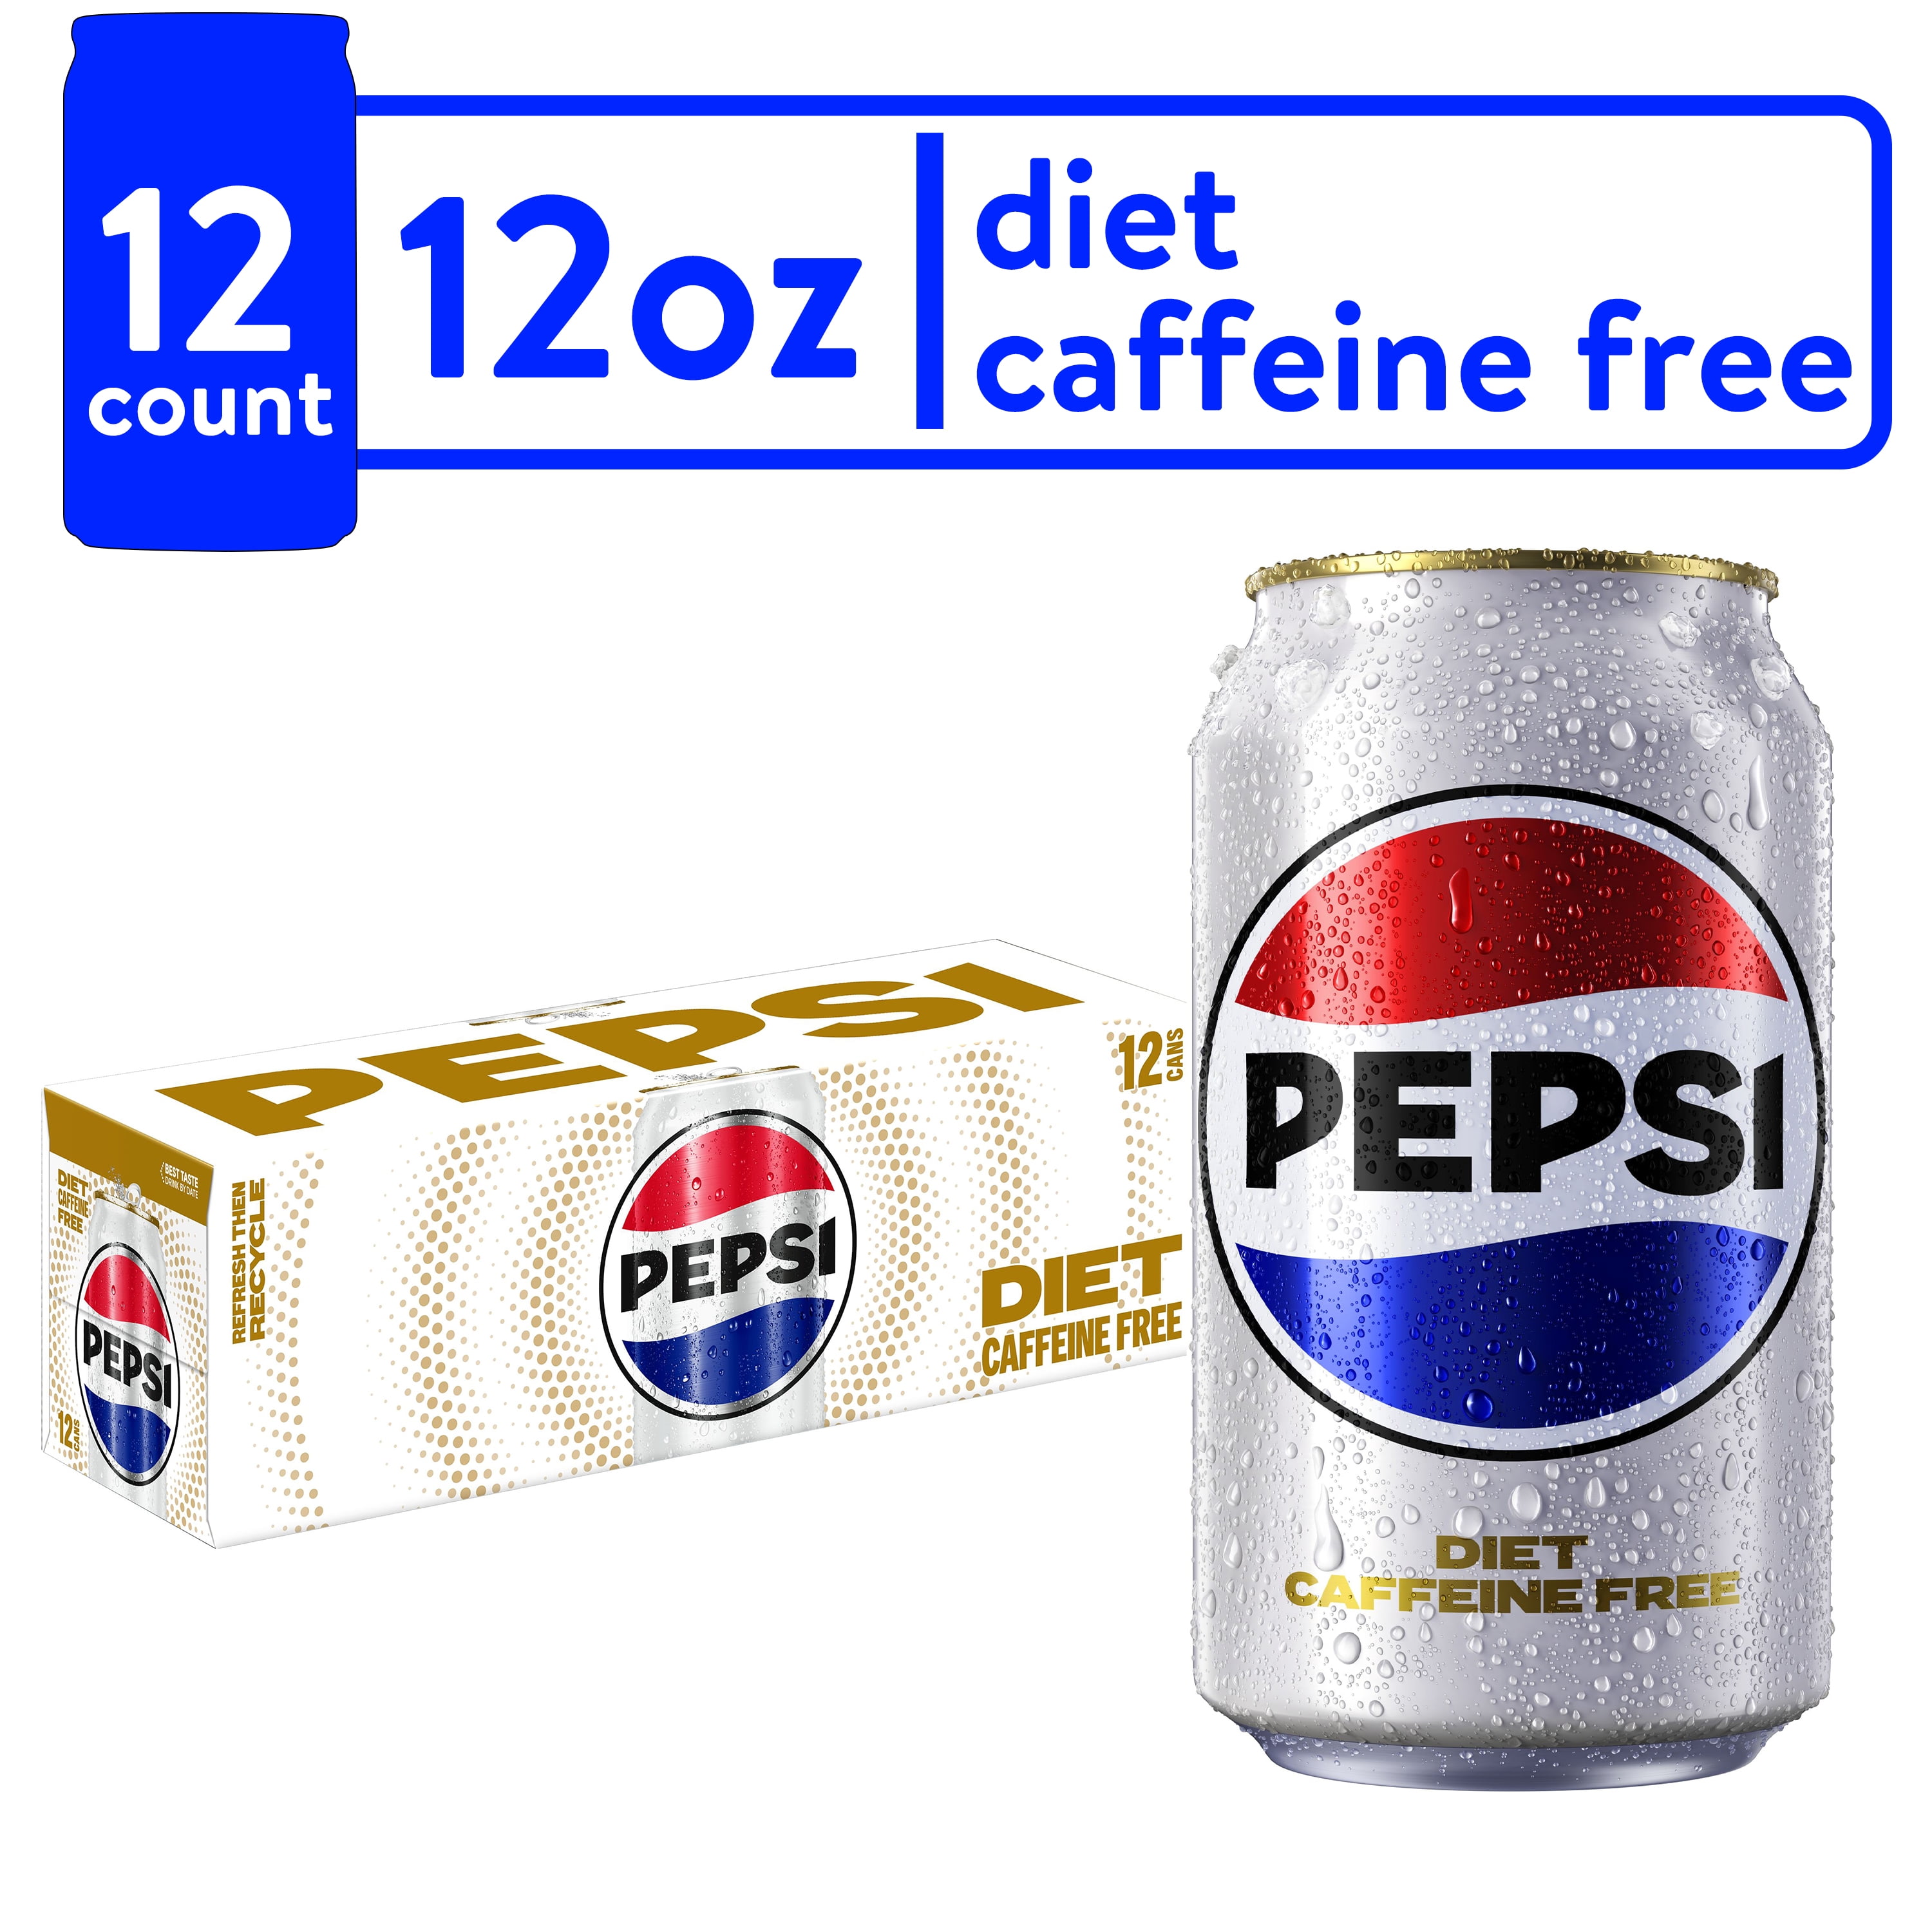 mandig ydre efterligne Diet Pepsi Cola Caffeine Free Soda Pop, 12 fl oz, 12 Pack Cans - Walmart.com